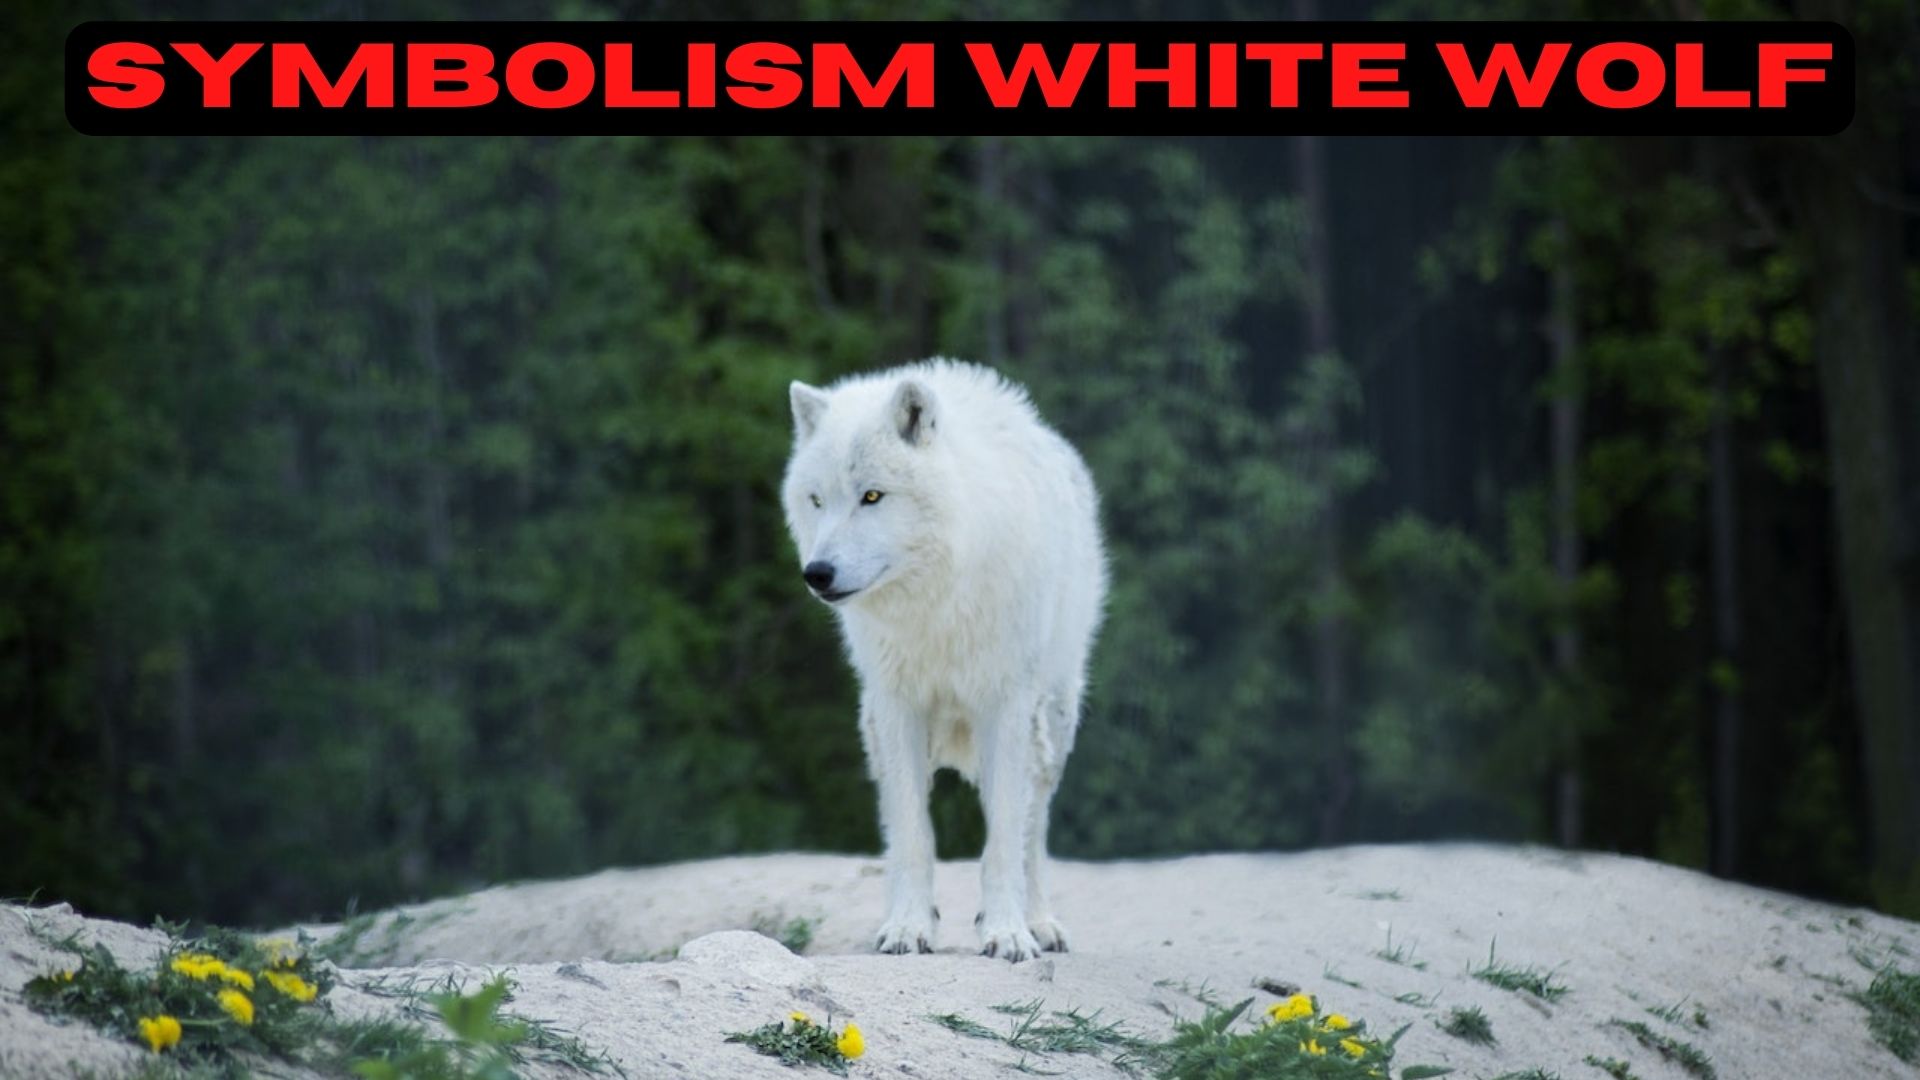 Symbolism White Wolf - Symbolizes Peace